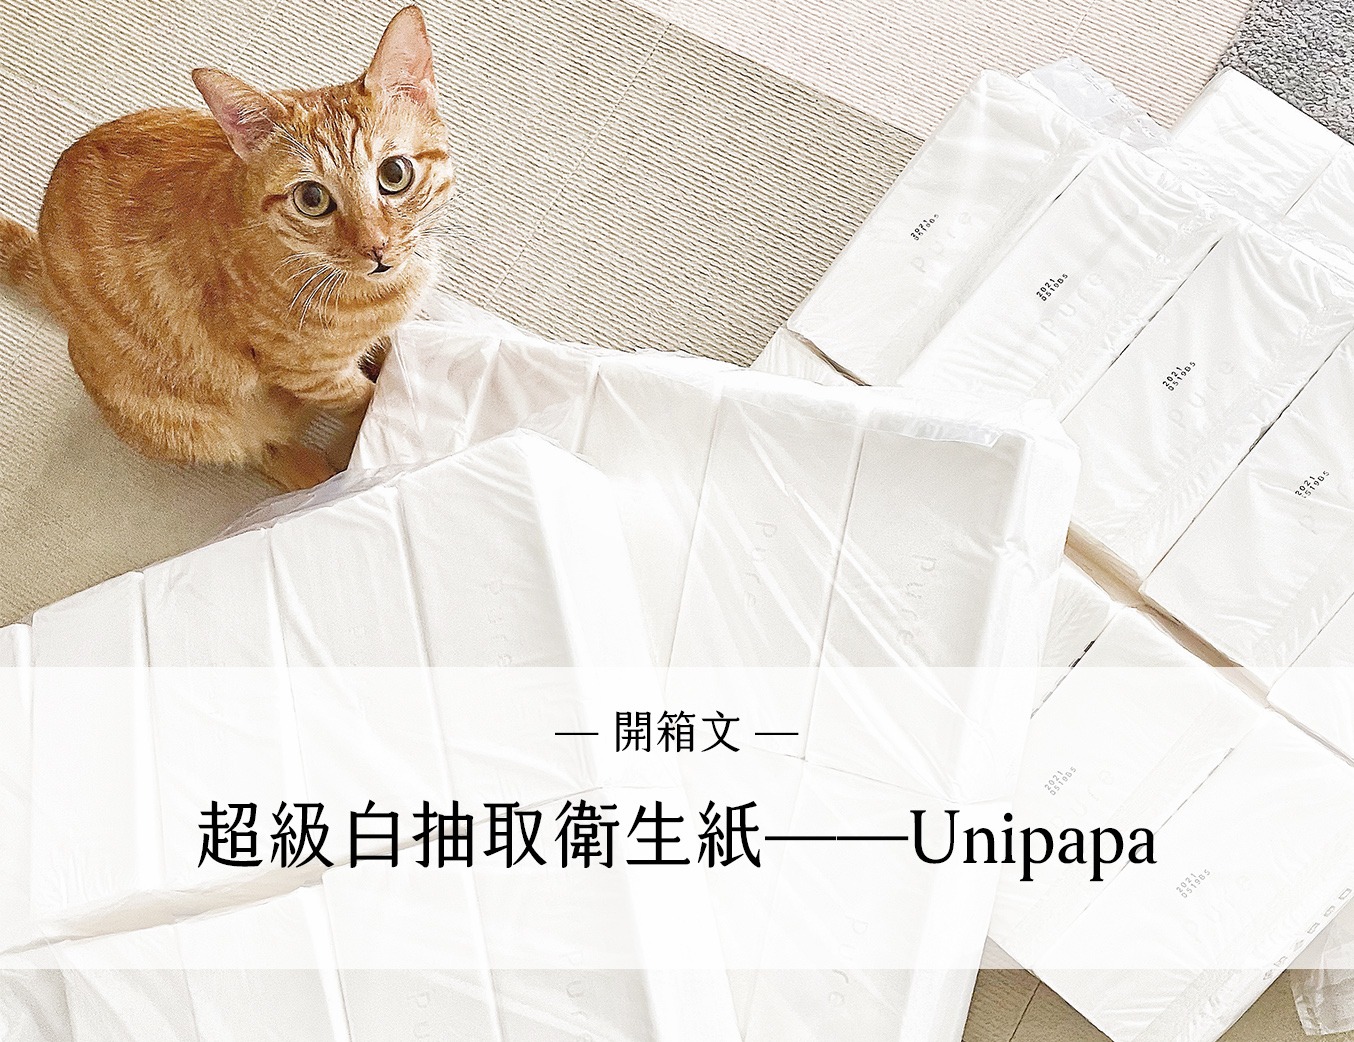 超級白抽取衛生紙——Unipapa